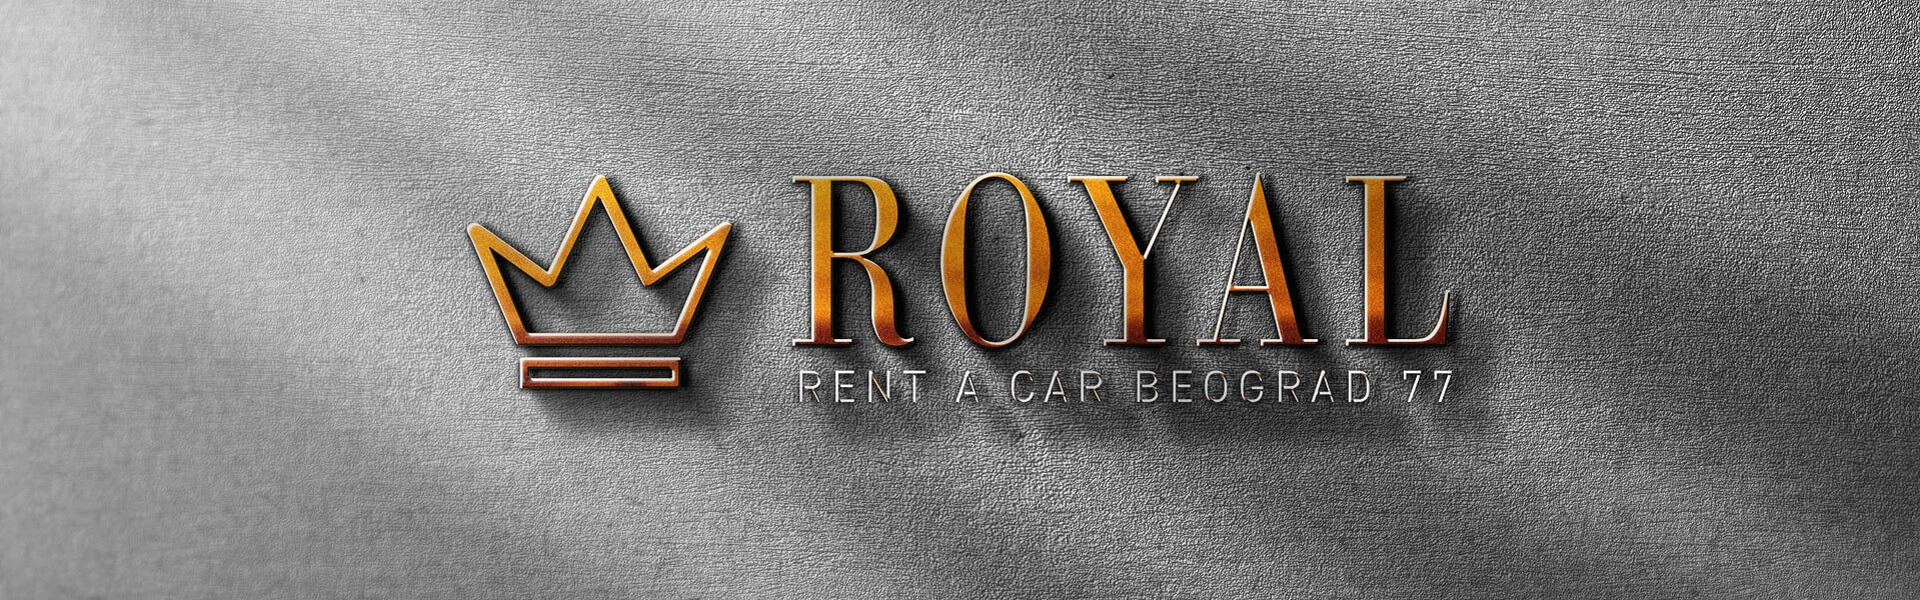 Registracija vozila | Car rental Beograd Royal